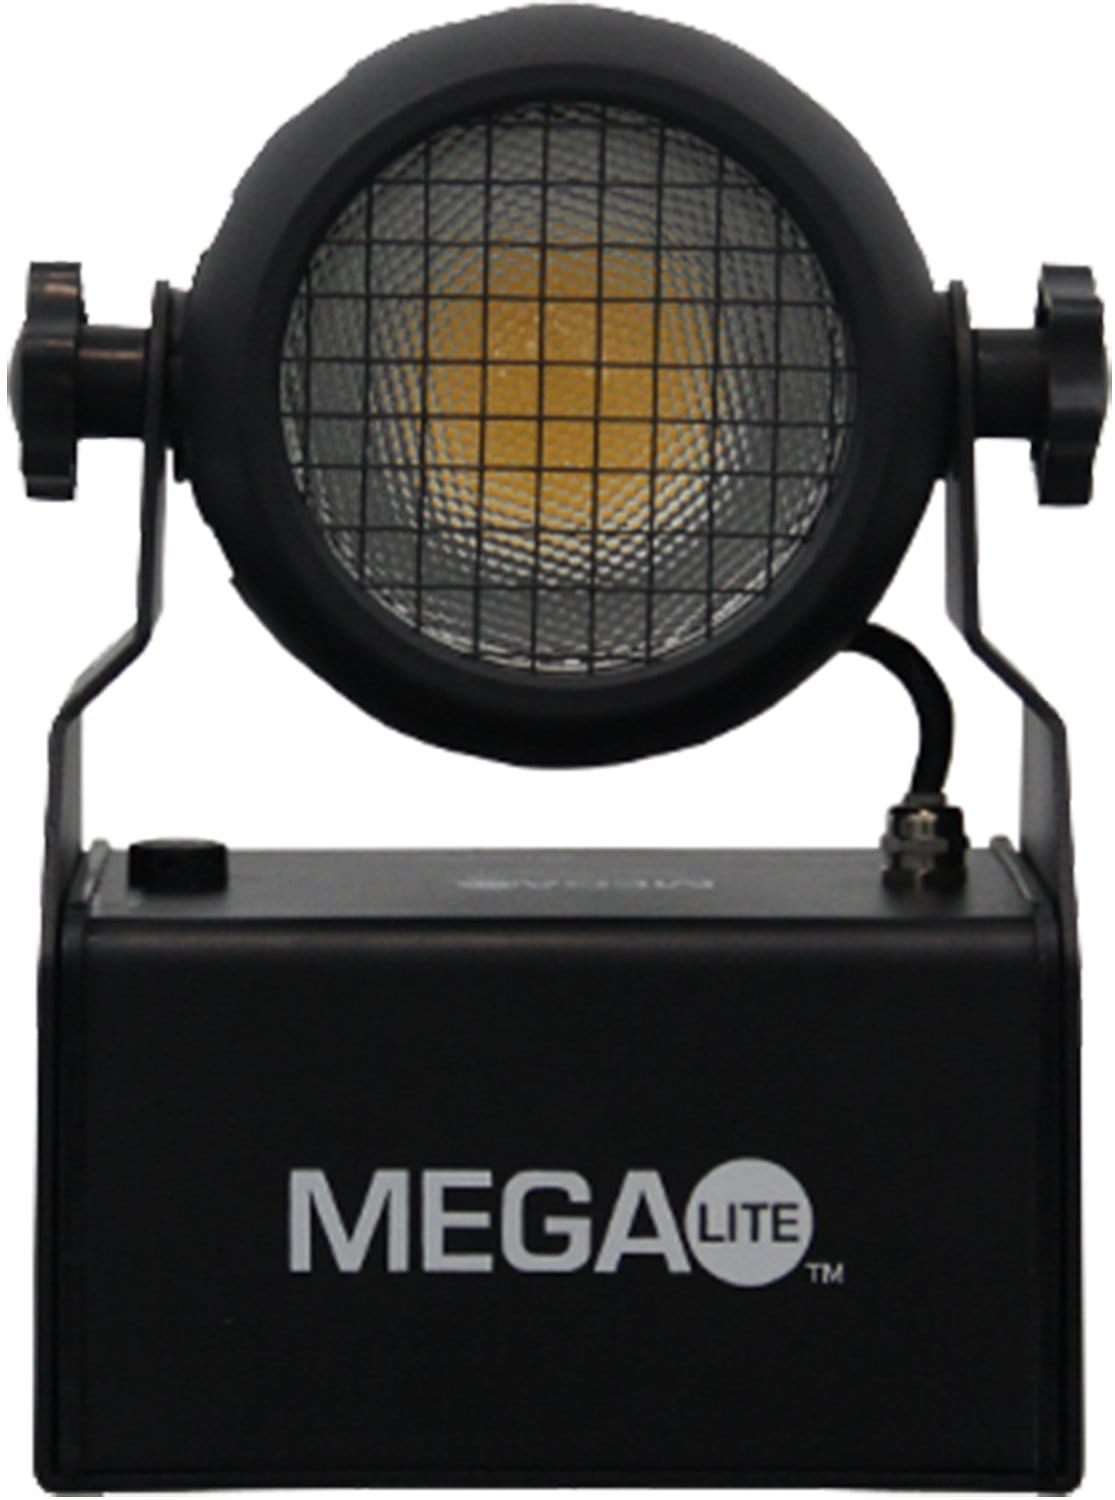 Mega Lite Piccolo Blinder 120 IP65 120w 3000k LED - PSSL ProSound and Stage Lighting